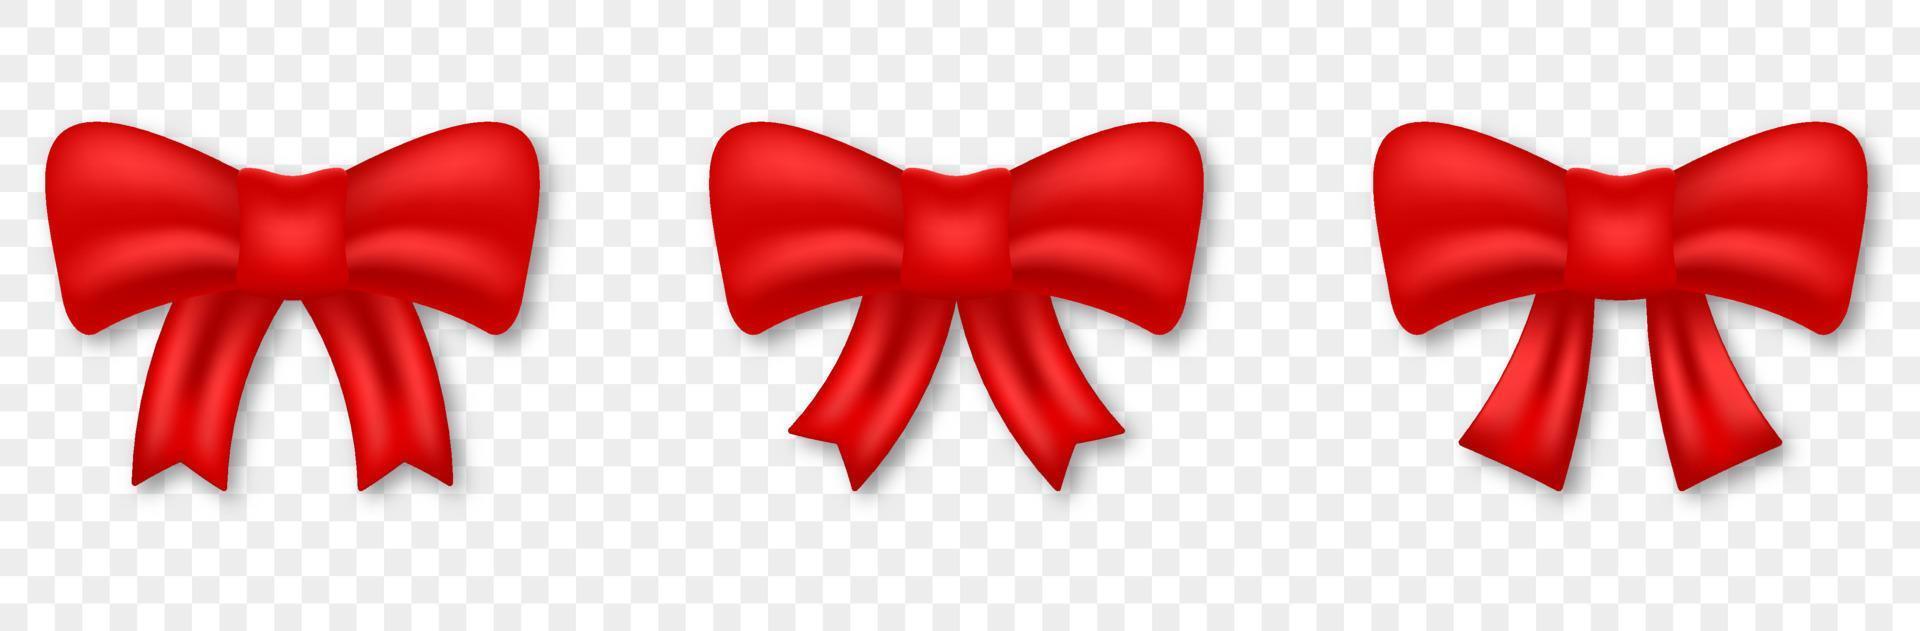 realistischer satz der roten schleife für dekorationsgeschenk. Geschenkelement aus Seidenband auf transparentem Hintergrund. Eleganter Satinknoten für Weihnachten, Geburtstag, Jubiläumsüberraschung. isolierte Vektorillustration. vektor